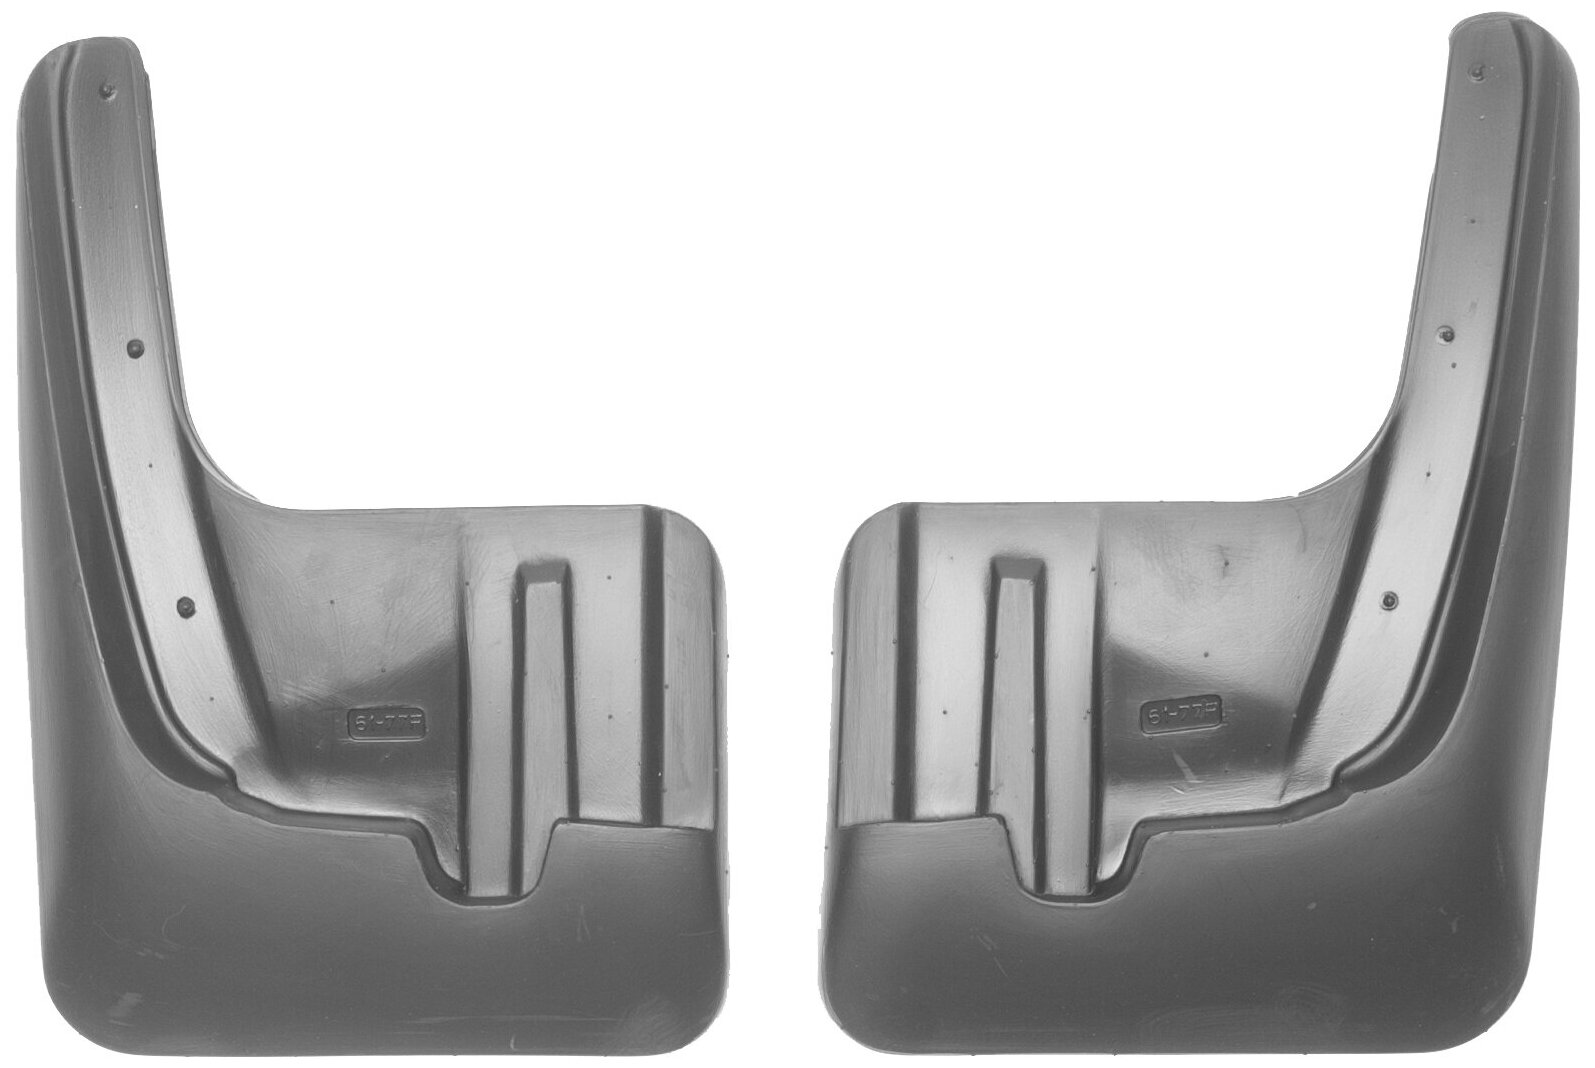 Брызговики Norplast для Nissan Tiida в кузове С13, передние, Черные, 2015- арт. NPL-Br-61-77F